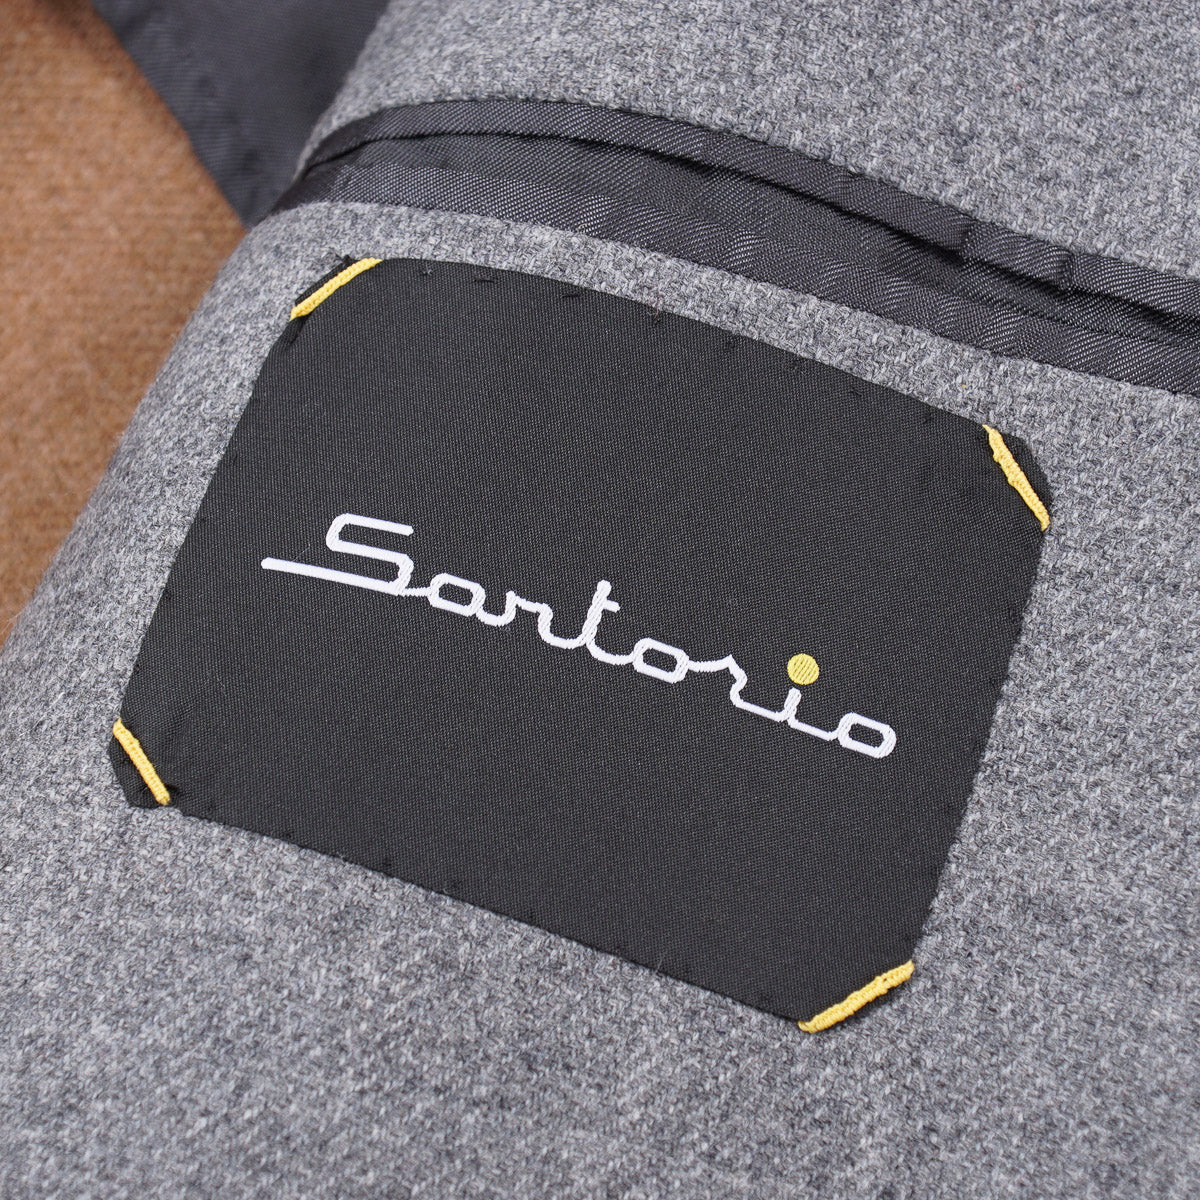 Sartorio Techno Flannel Cashmere Overcoat - Top Shelf Apparel